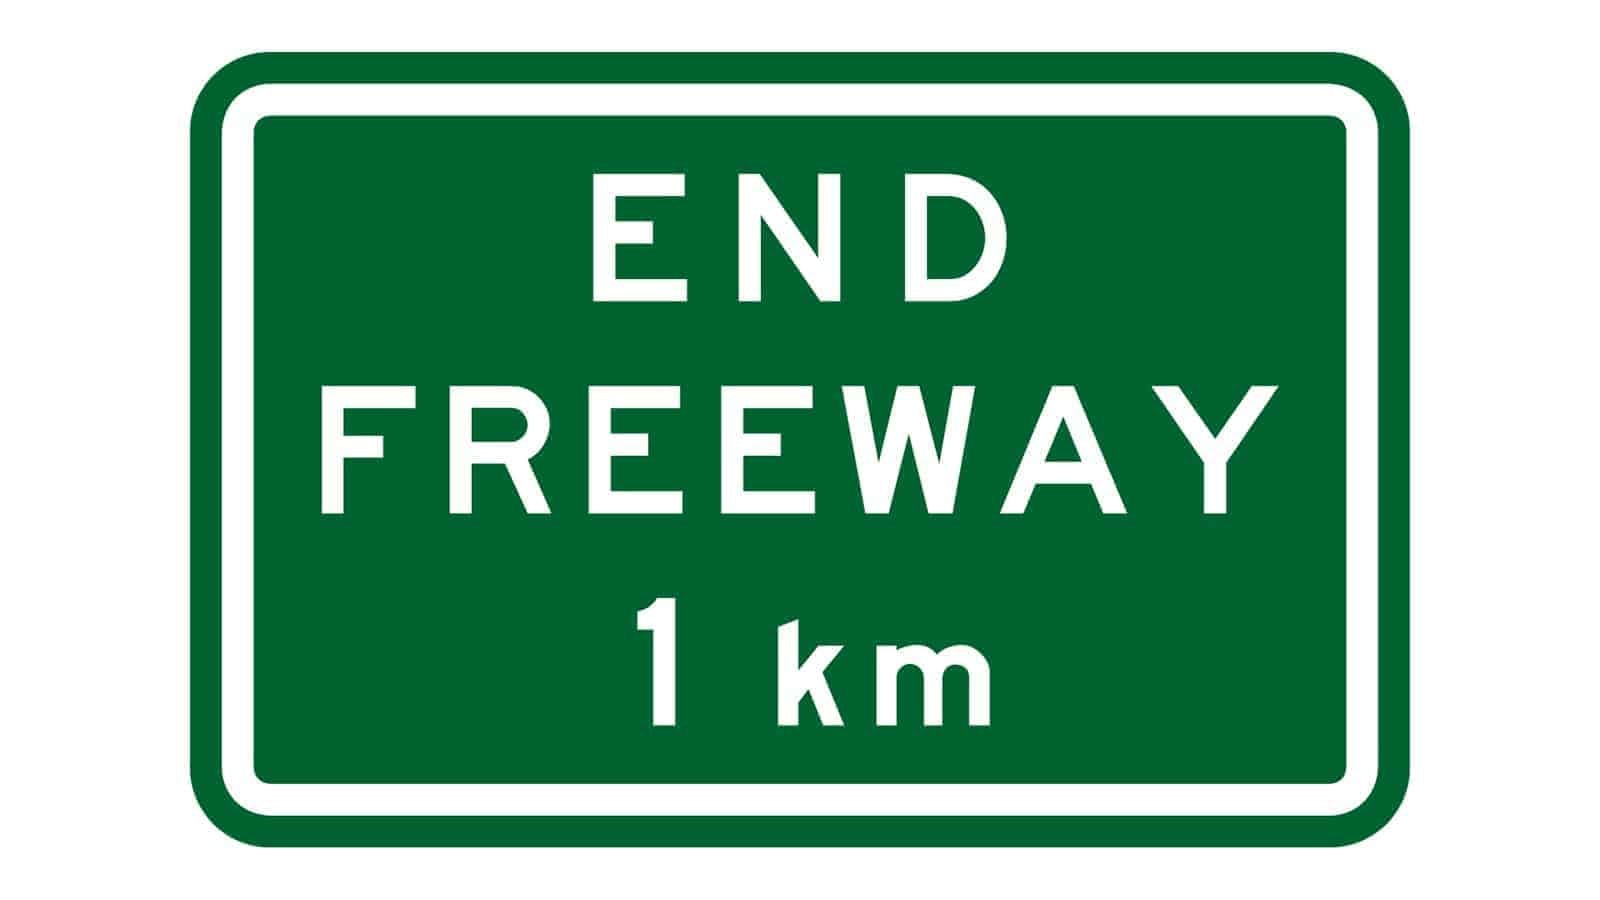 End Freeway 1 km